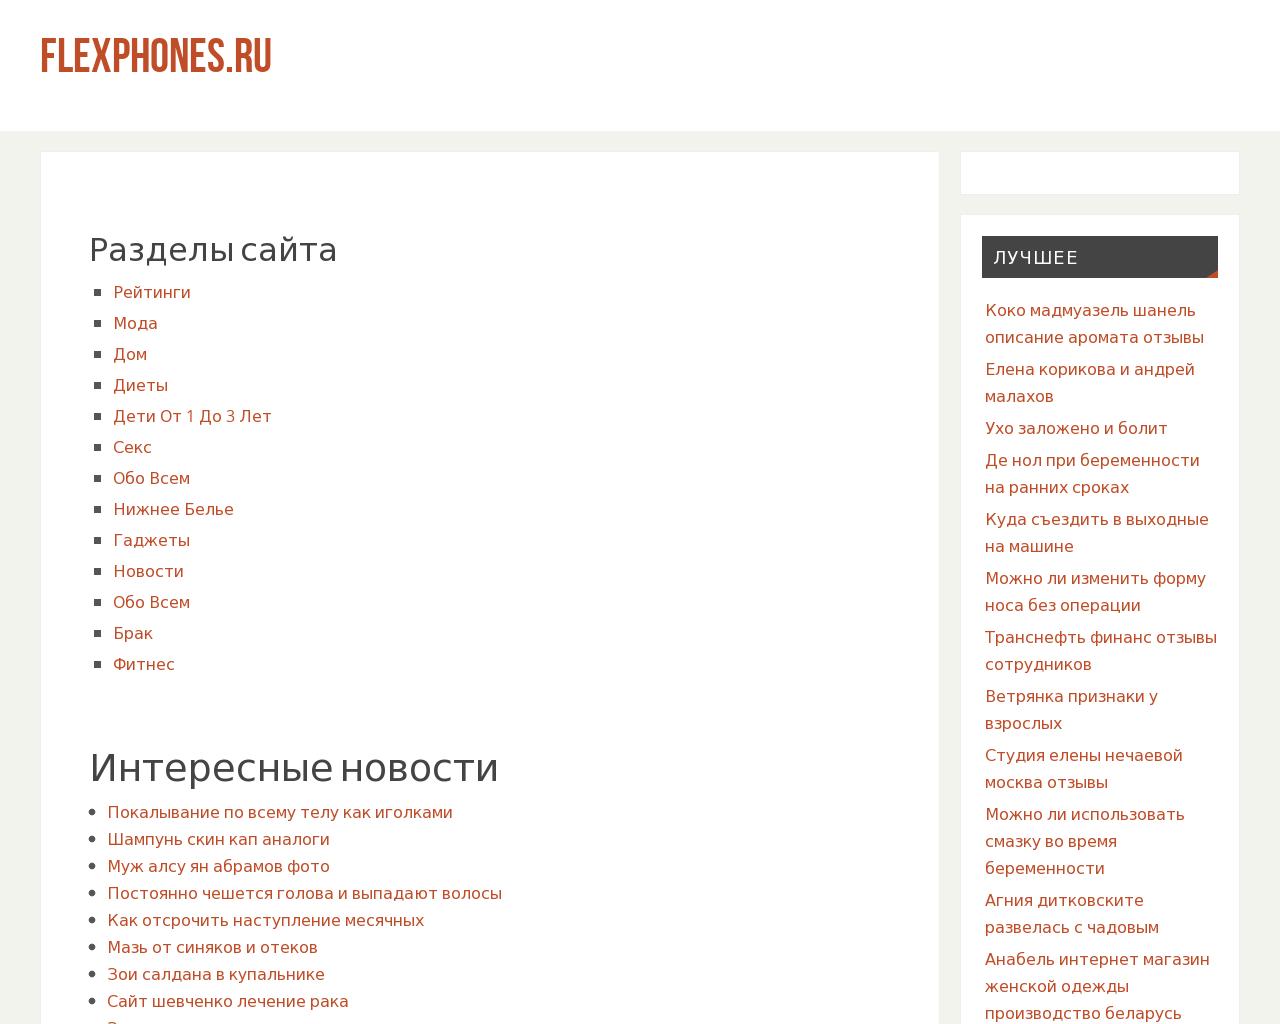 Изображение сайта flexphones.ru в разрешении 1280x1024